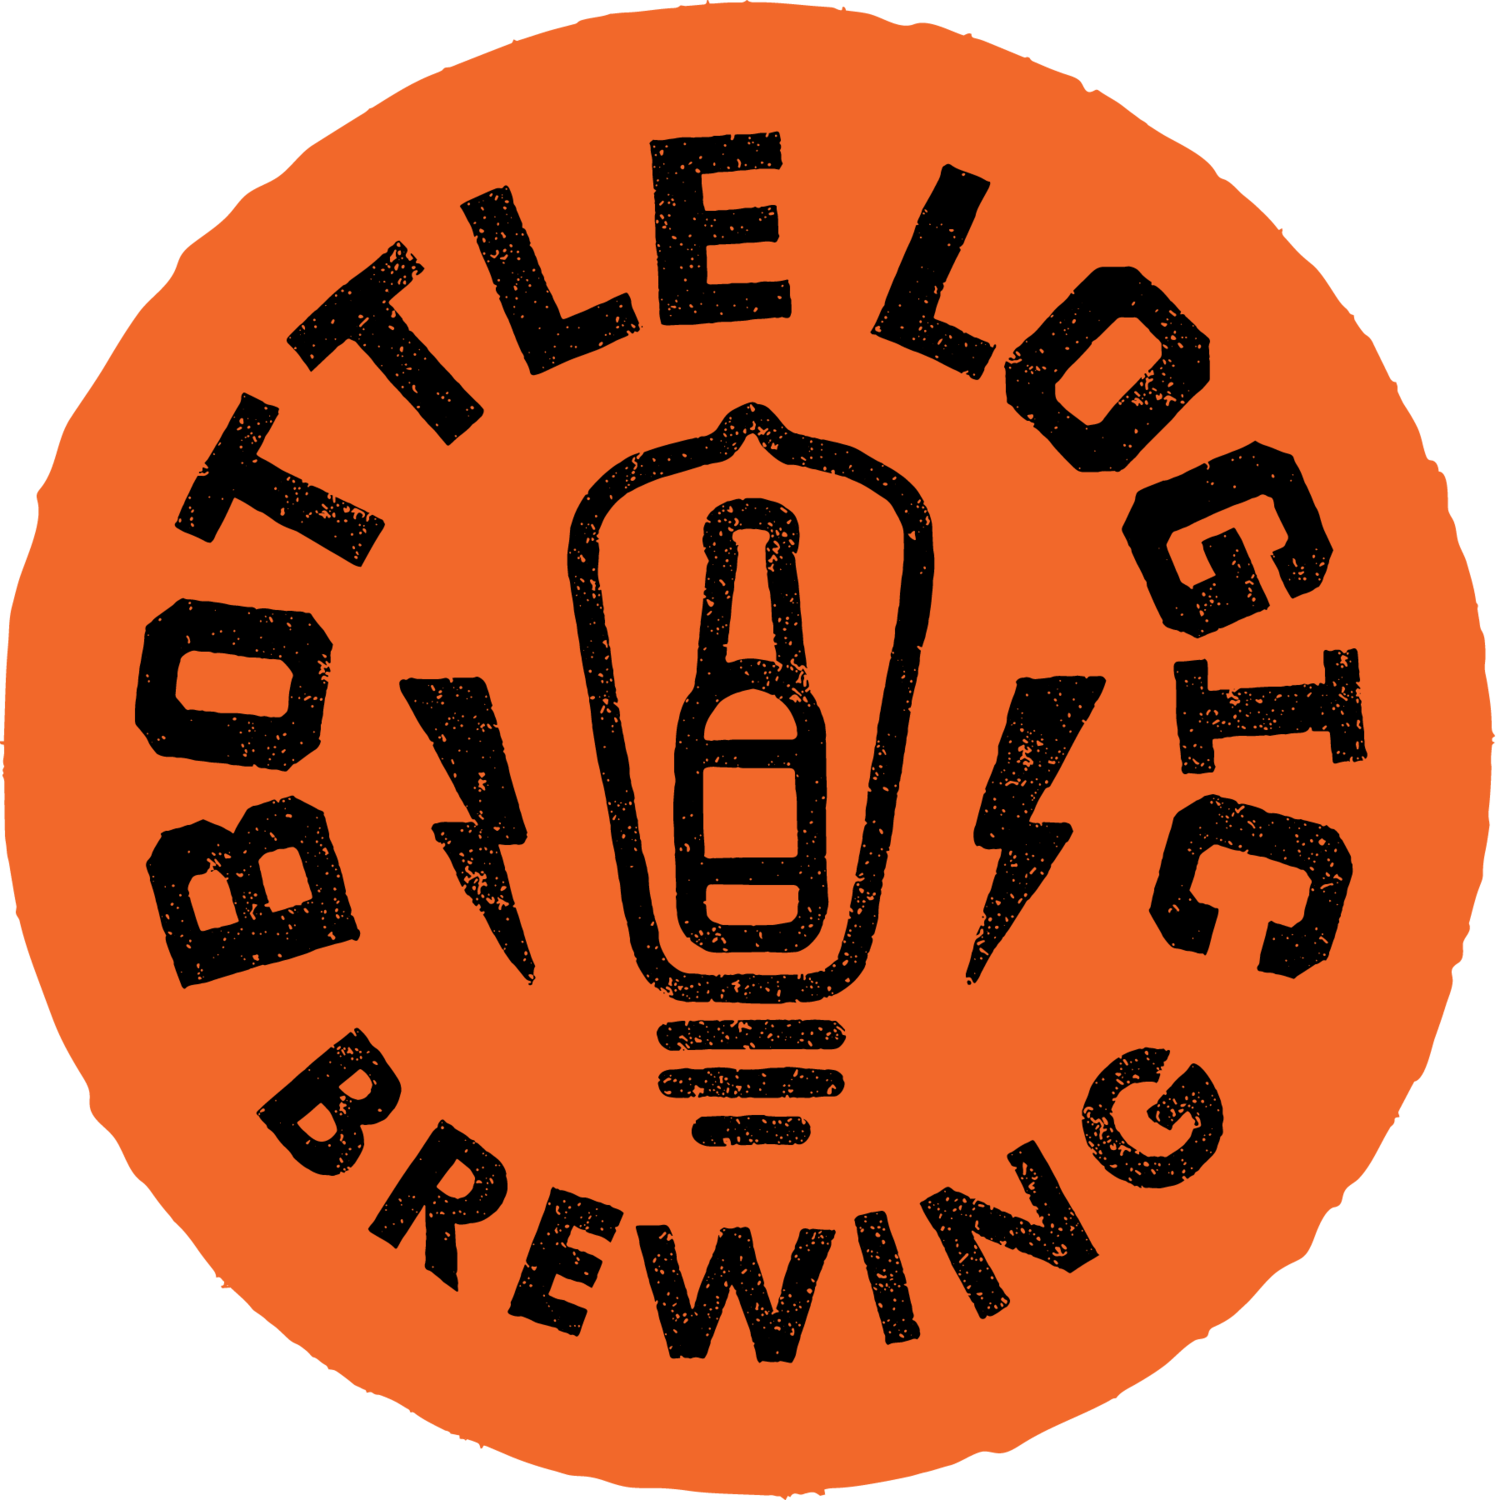 Find Our Beer Bottle Logic Brewing